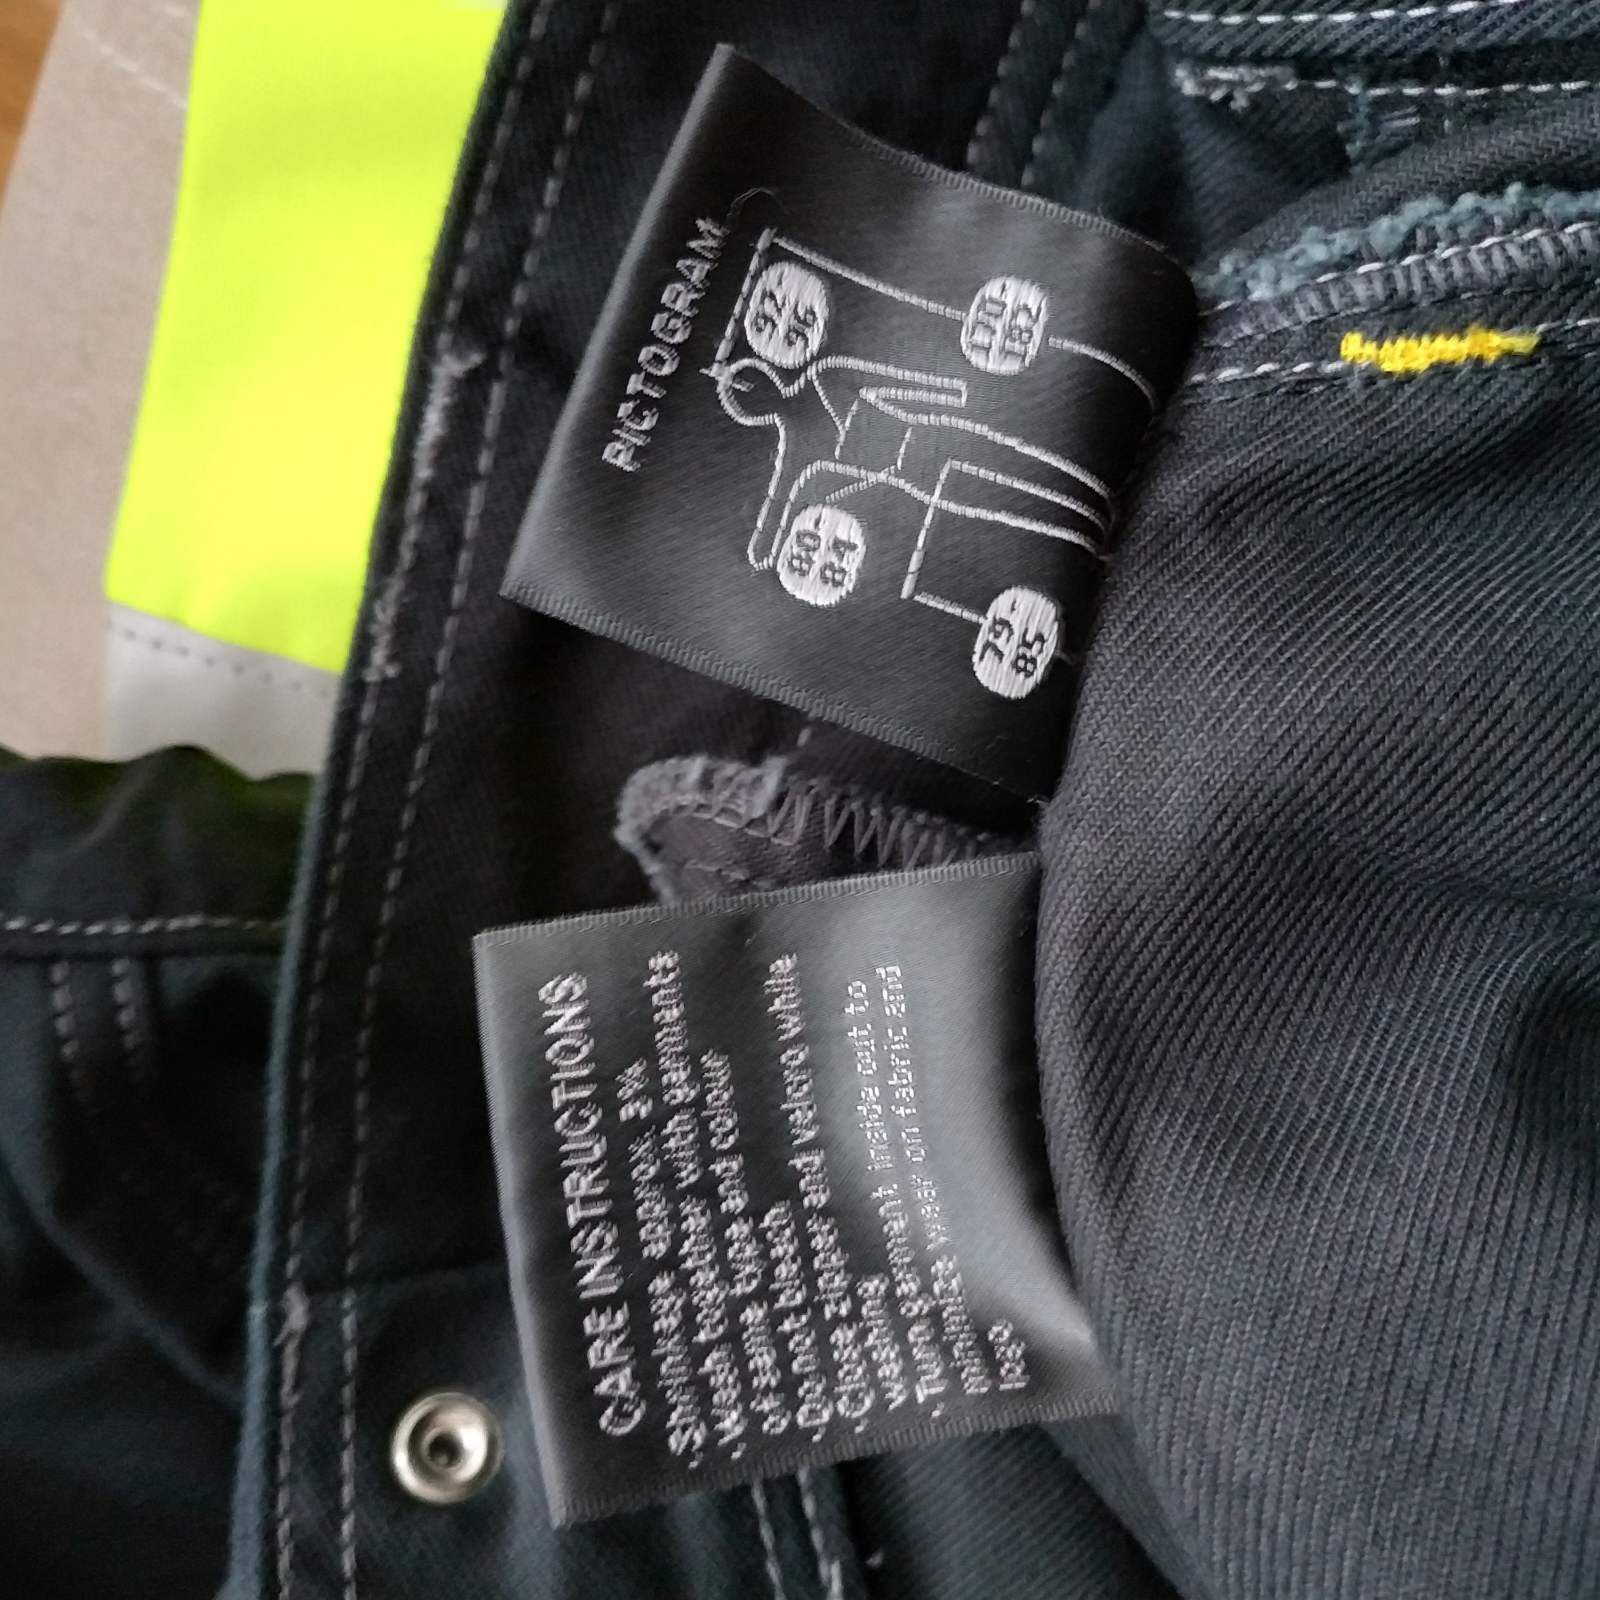 Snickers work wear штаны рабочие размер 48(33/32), новые с биркой